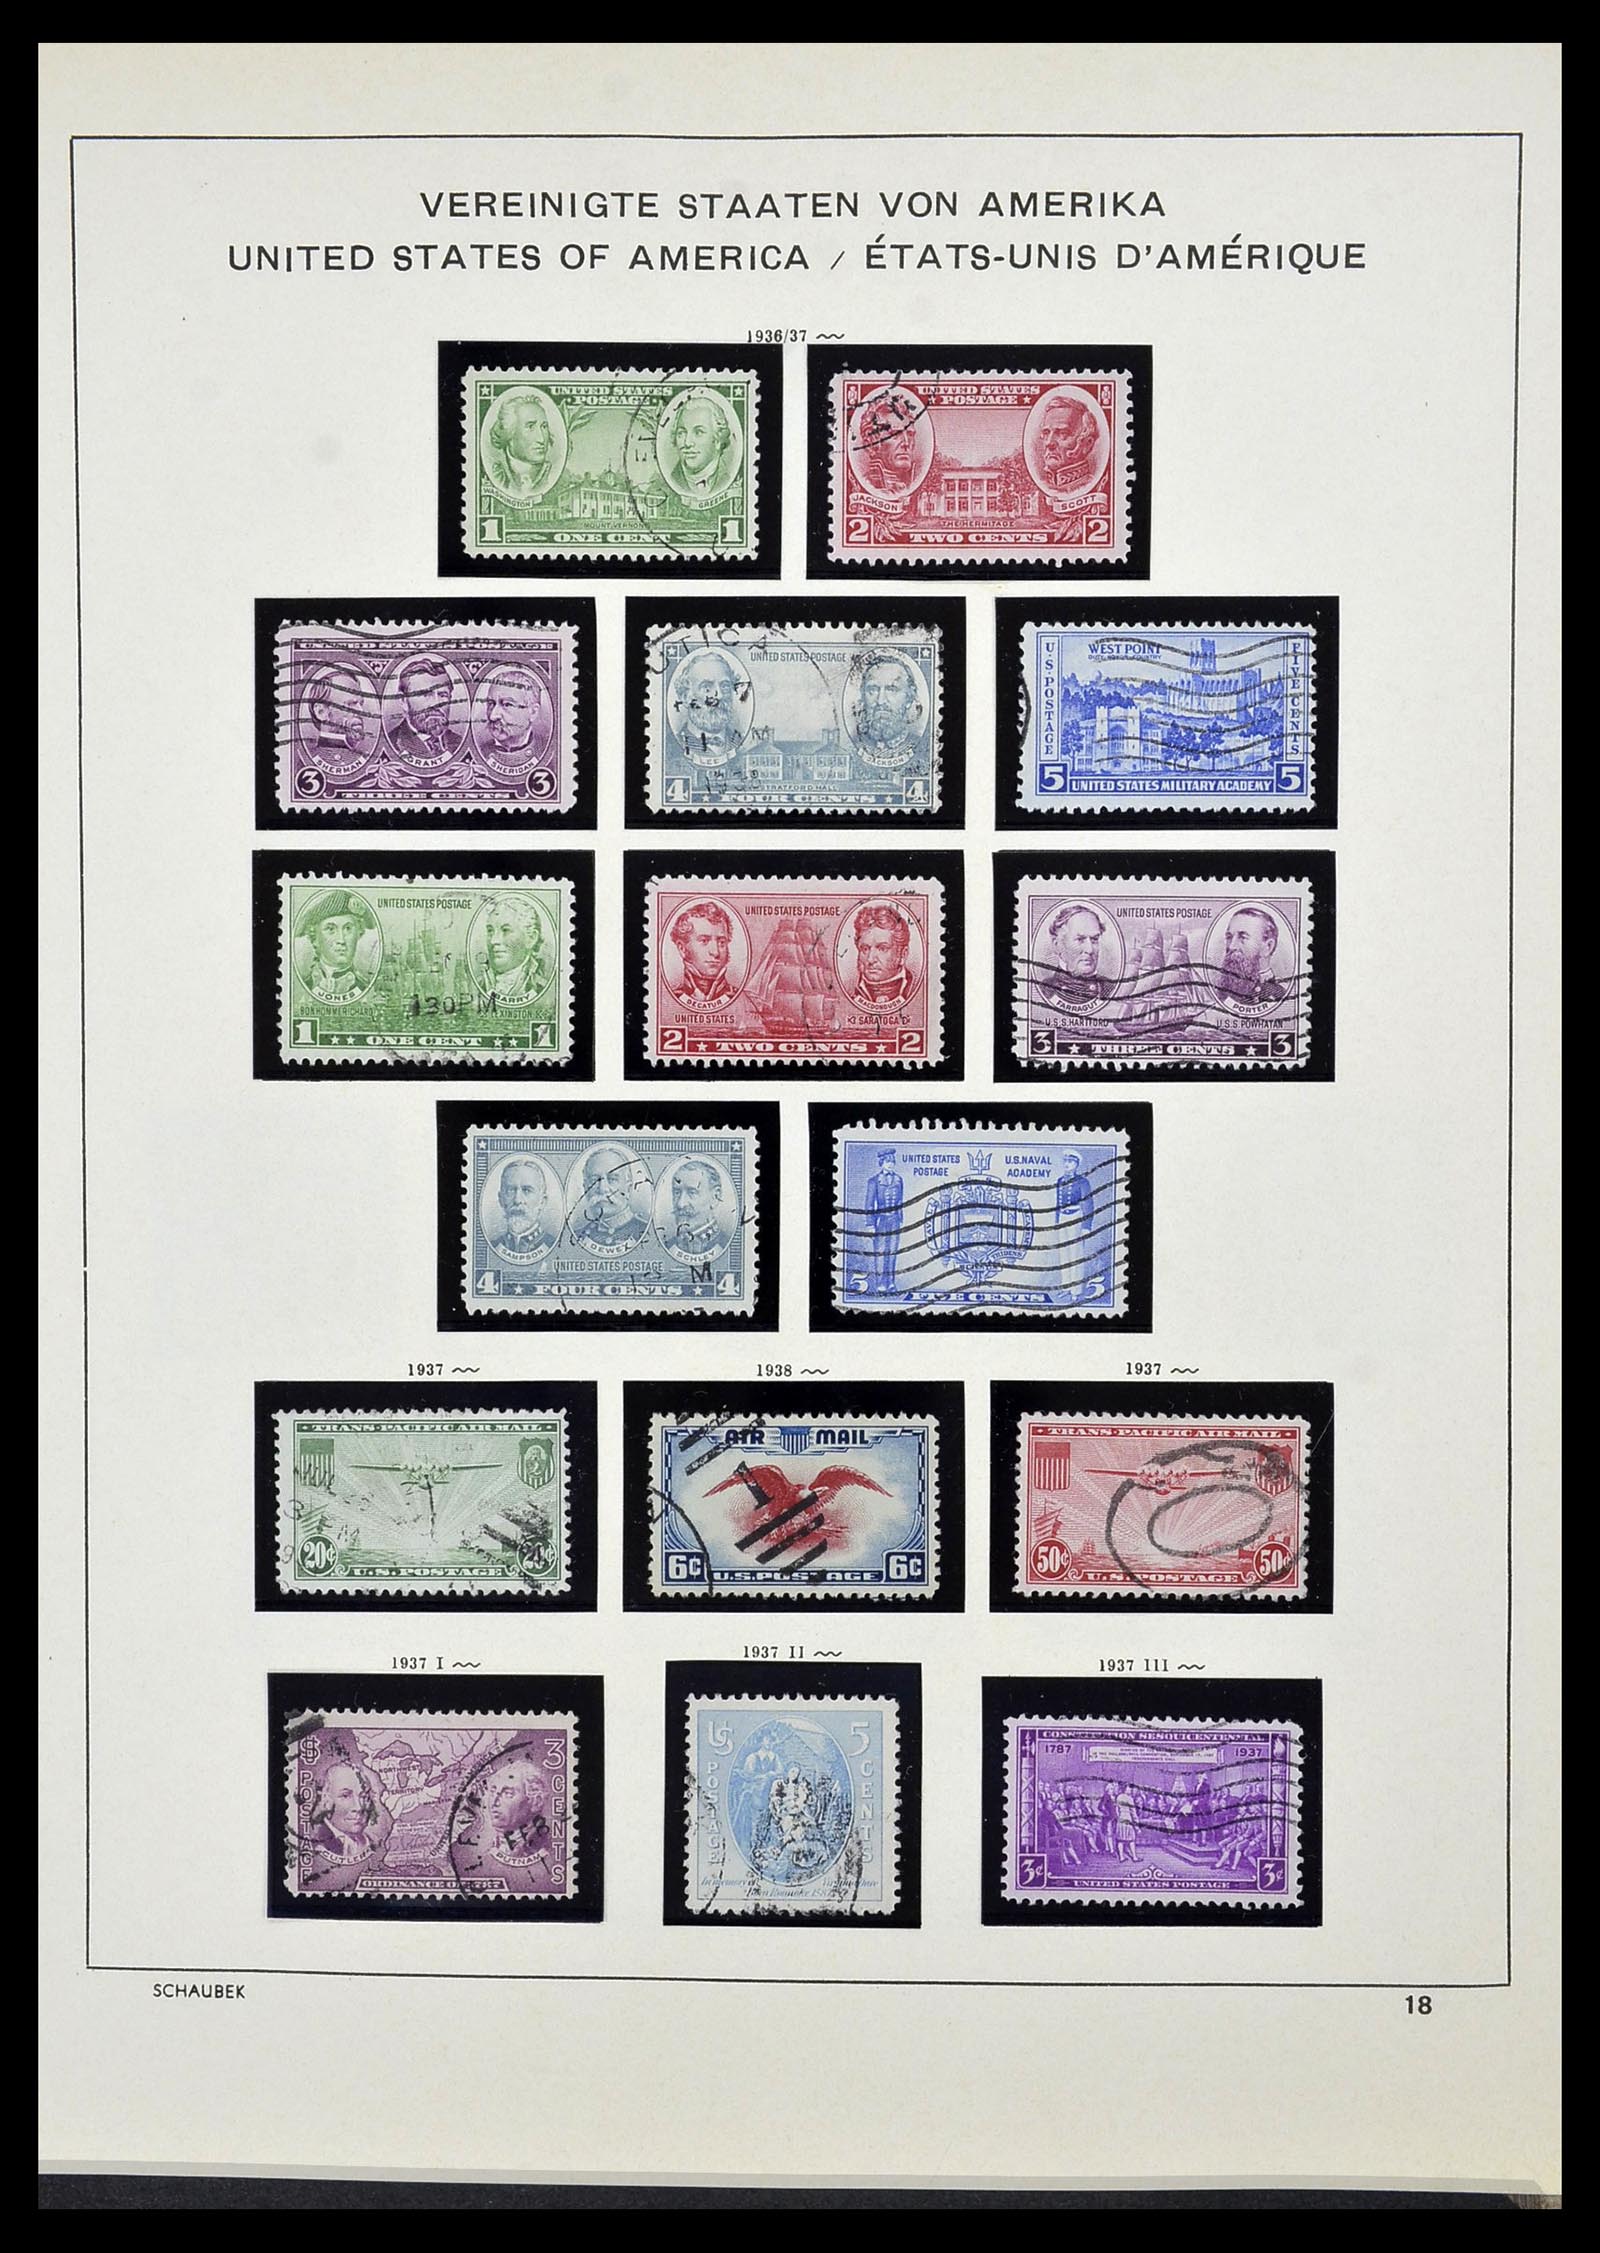 34525 034 - Stamp Collection 34525 USA 1851-1980.